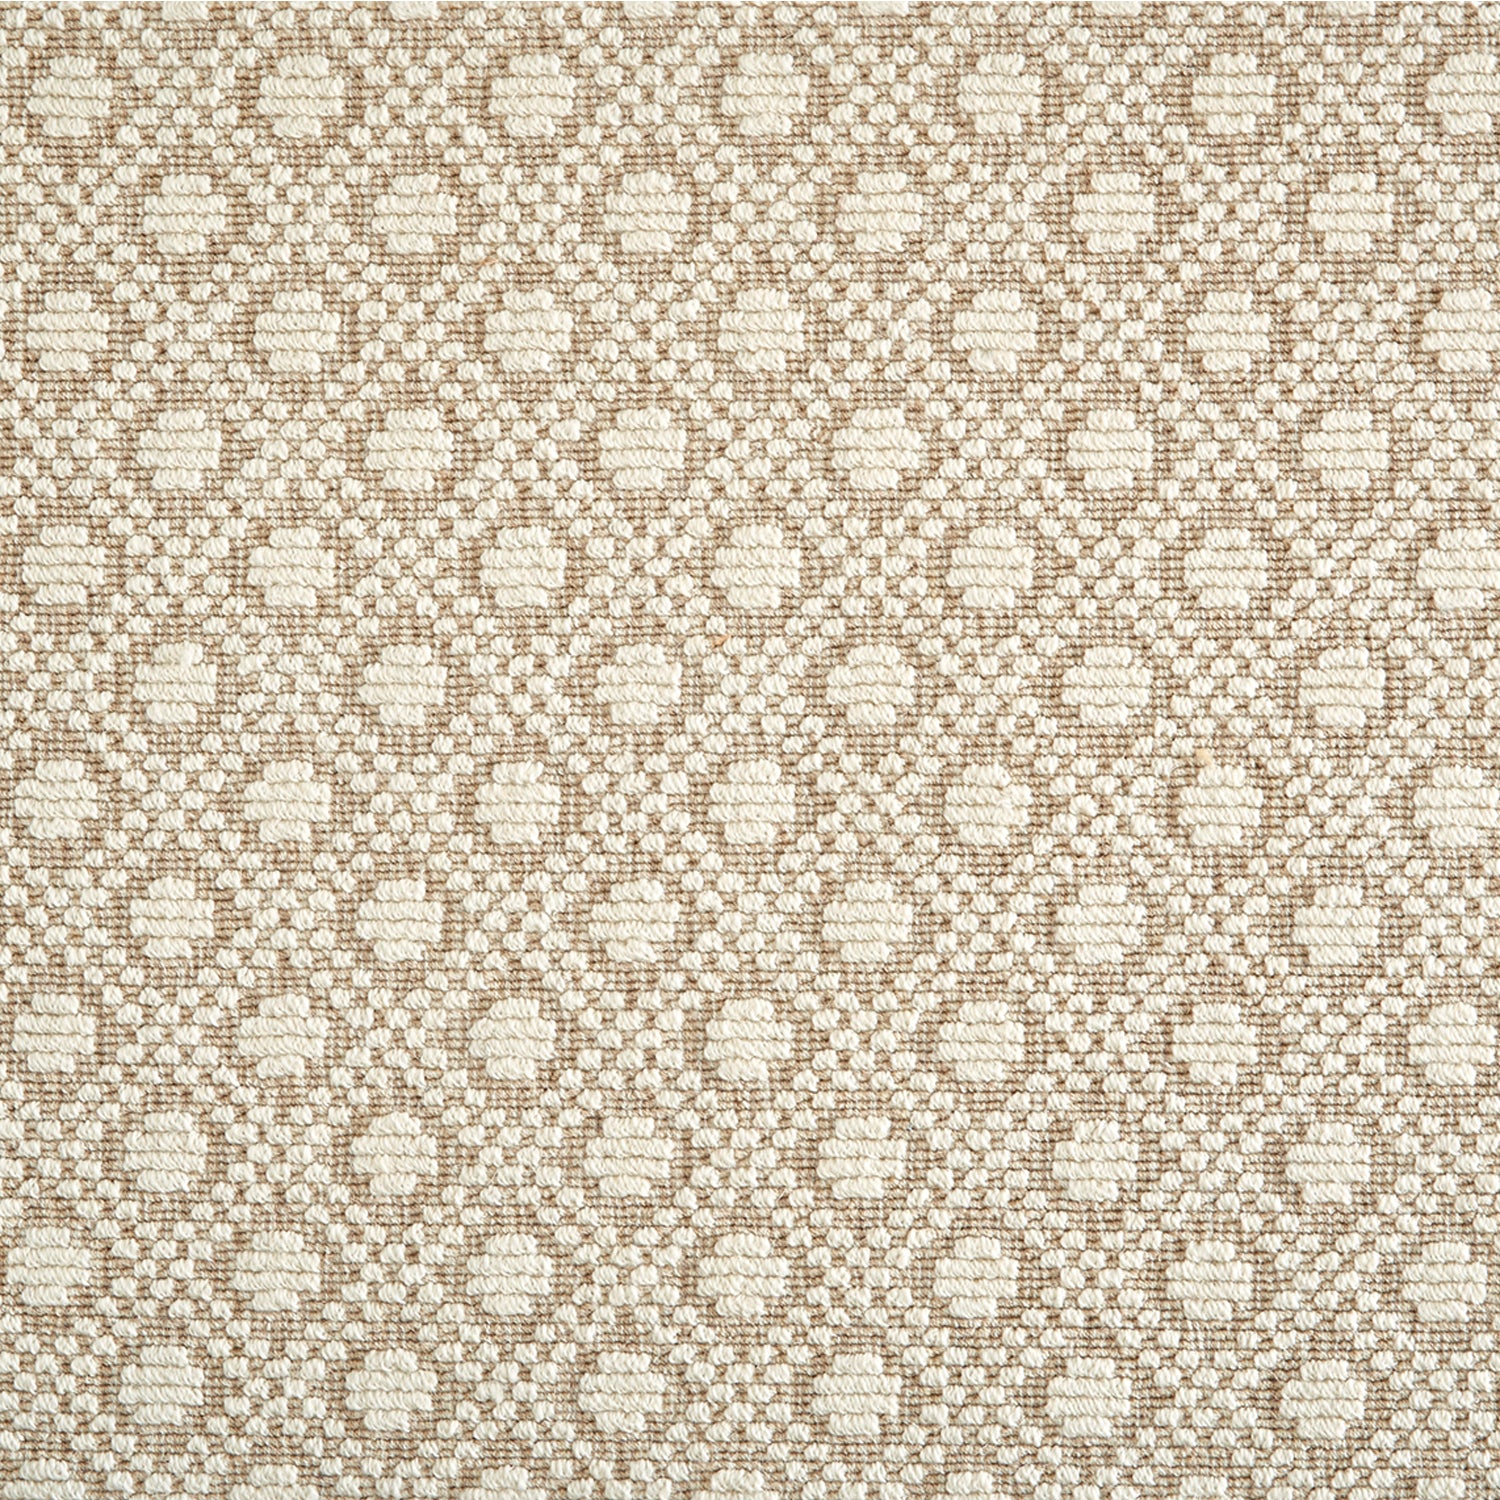 Wool-blend broadloom carpet swatch in a diamond weave in cream on a tan field.